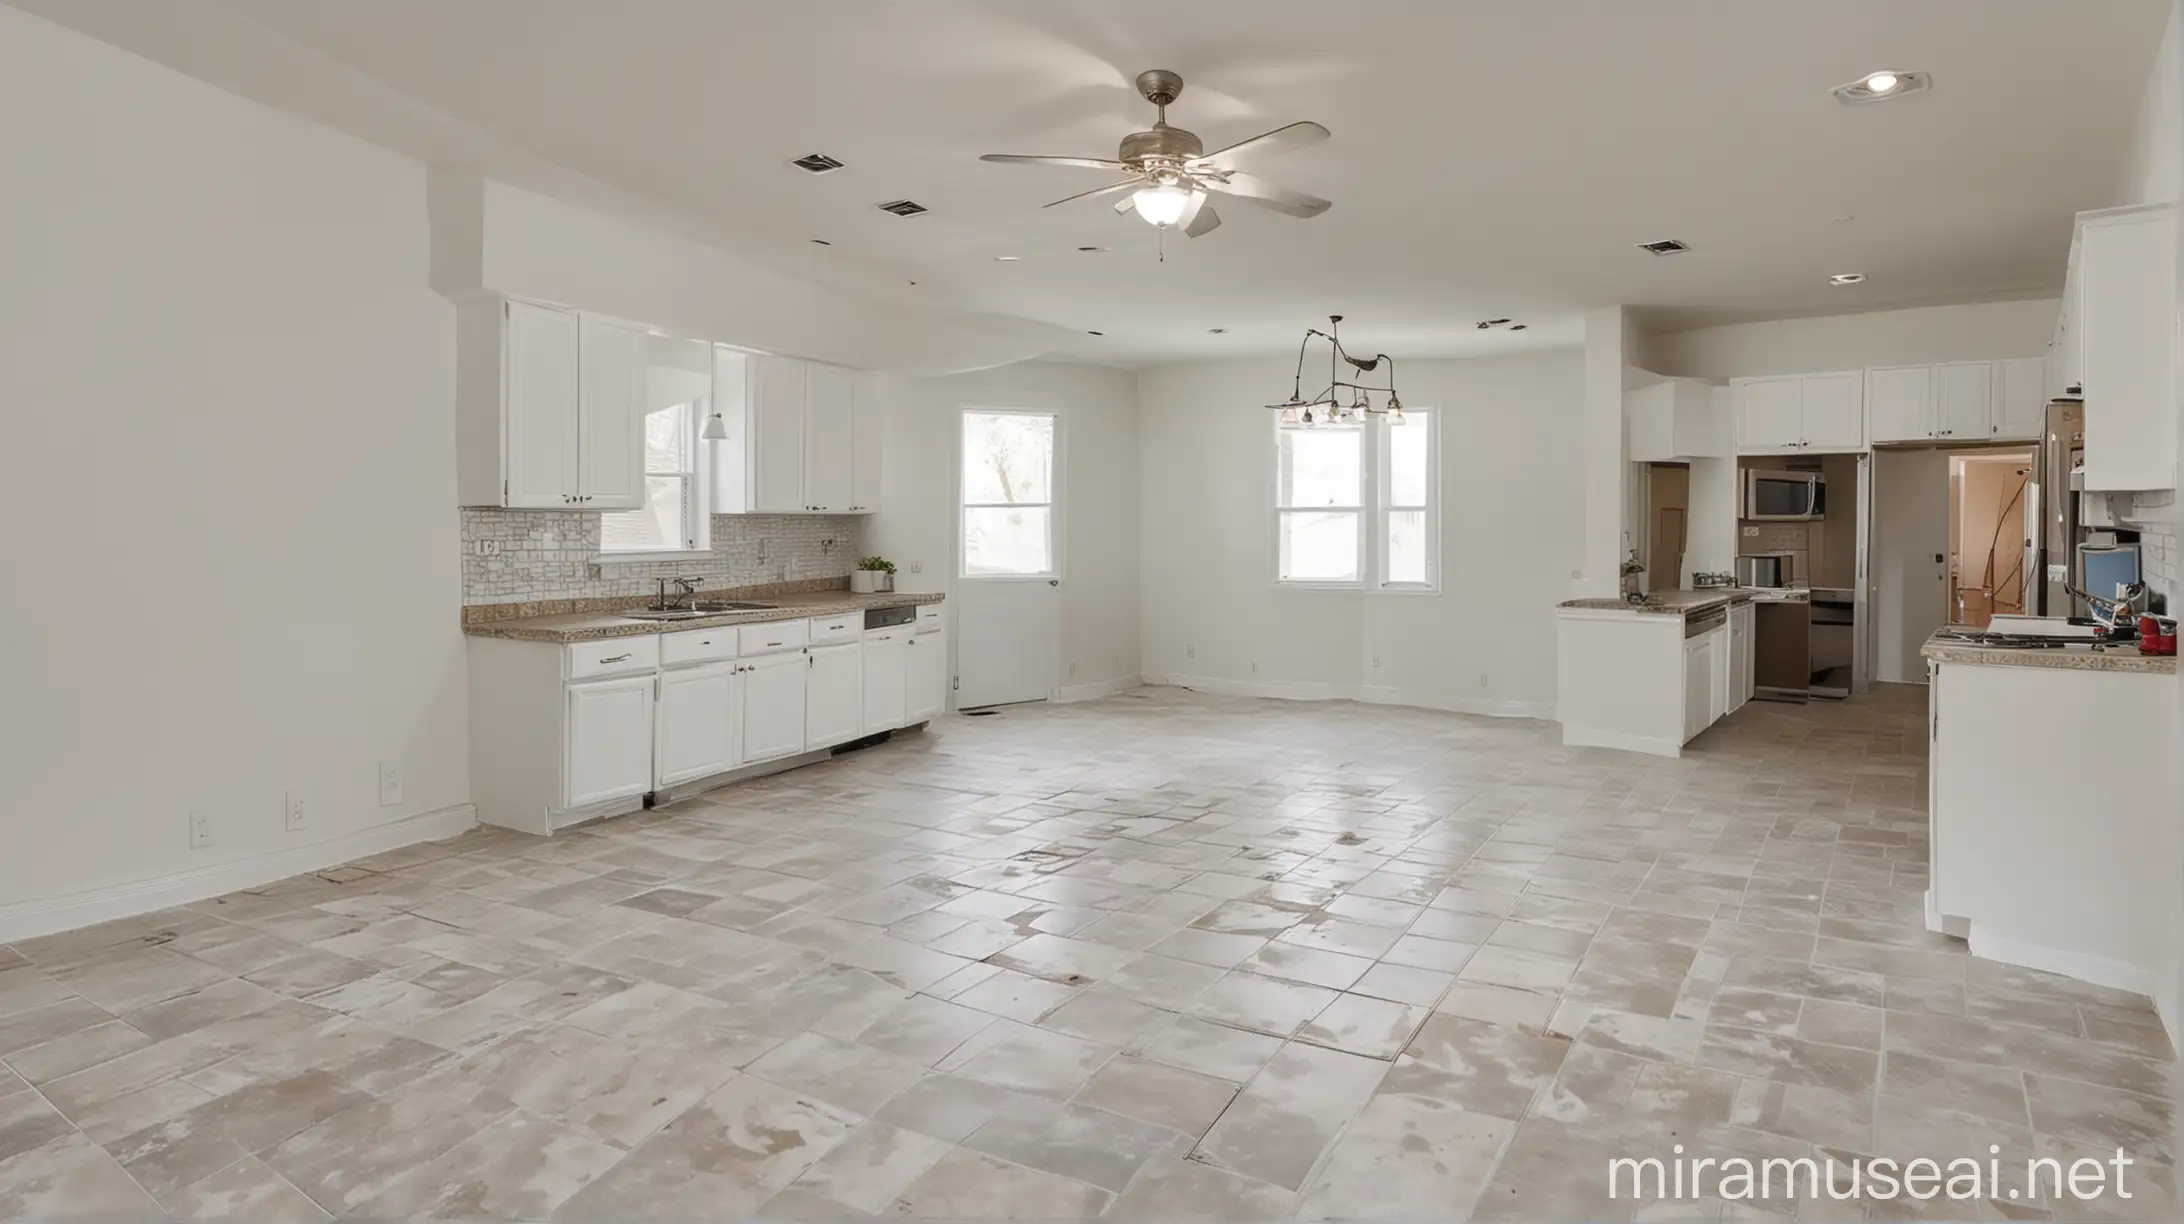 Dapur kosong dengan dinding putih, lantai ubin, dan meja dapur. 